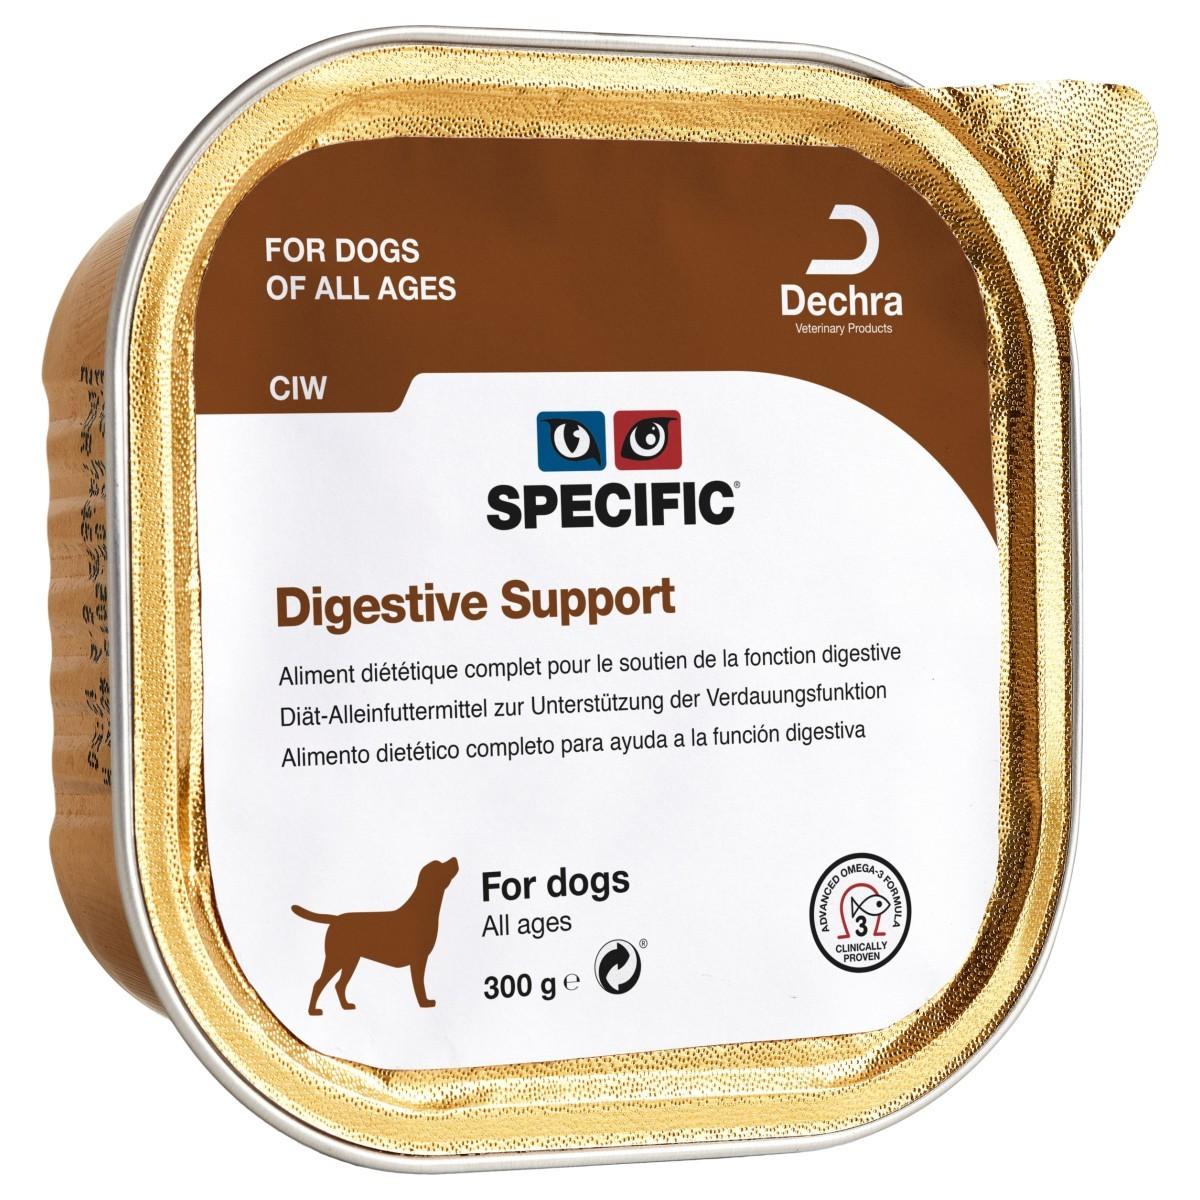 SPECIFIC DECHRA Pašteta za pse digestive support 300g